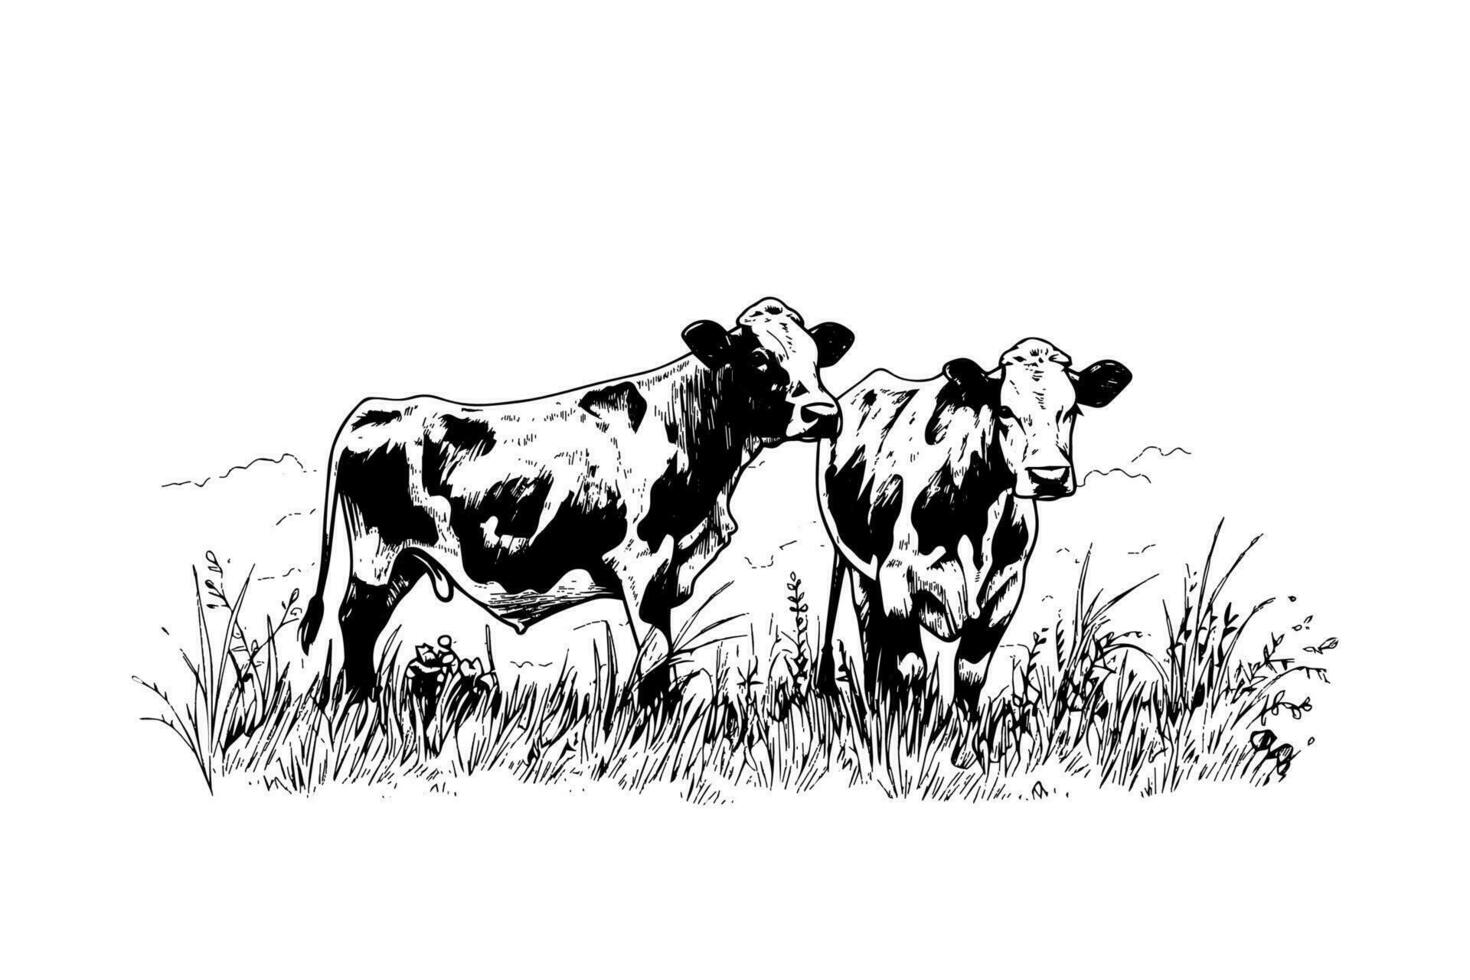 zwei Kuh weidet im das Feld. Vektor Hand gezeichnet Gravur Stil Illustration.